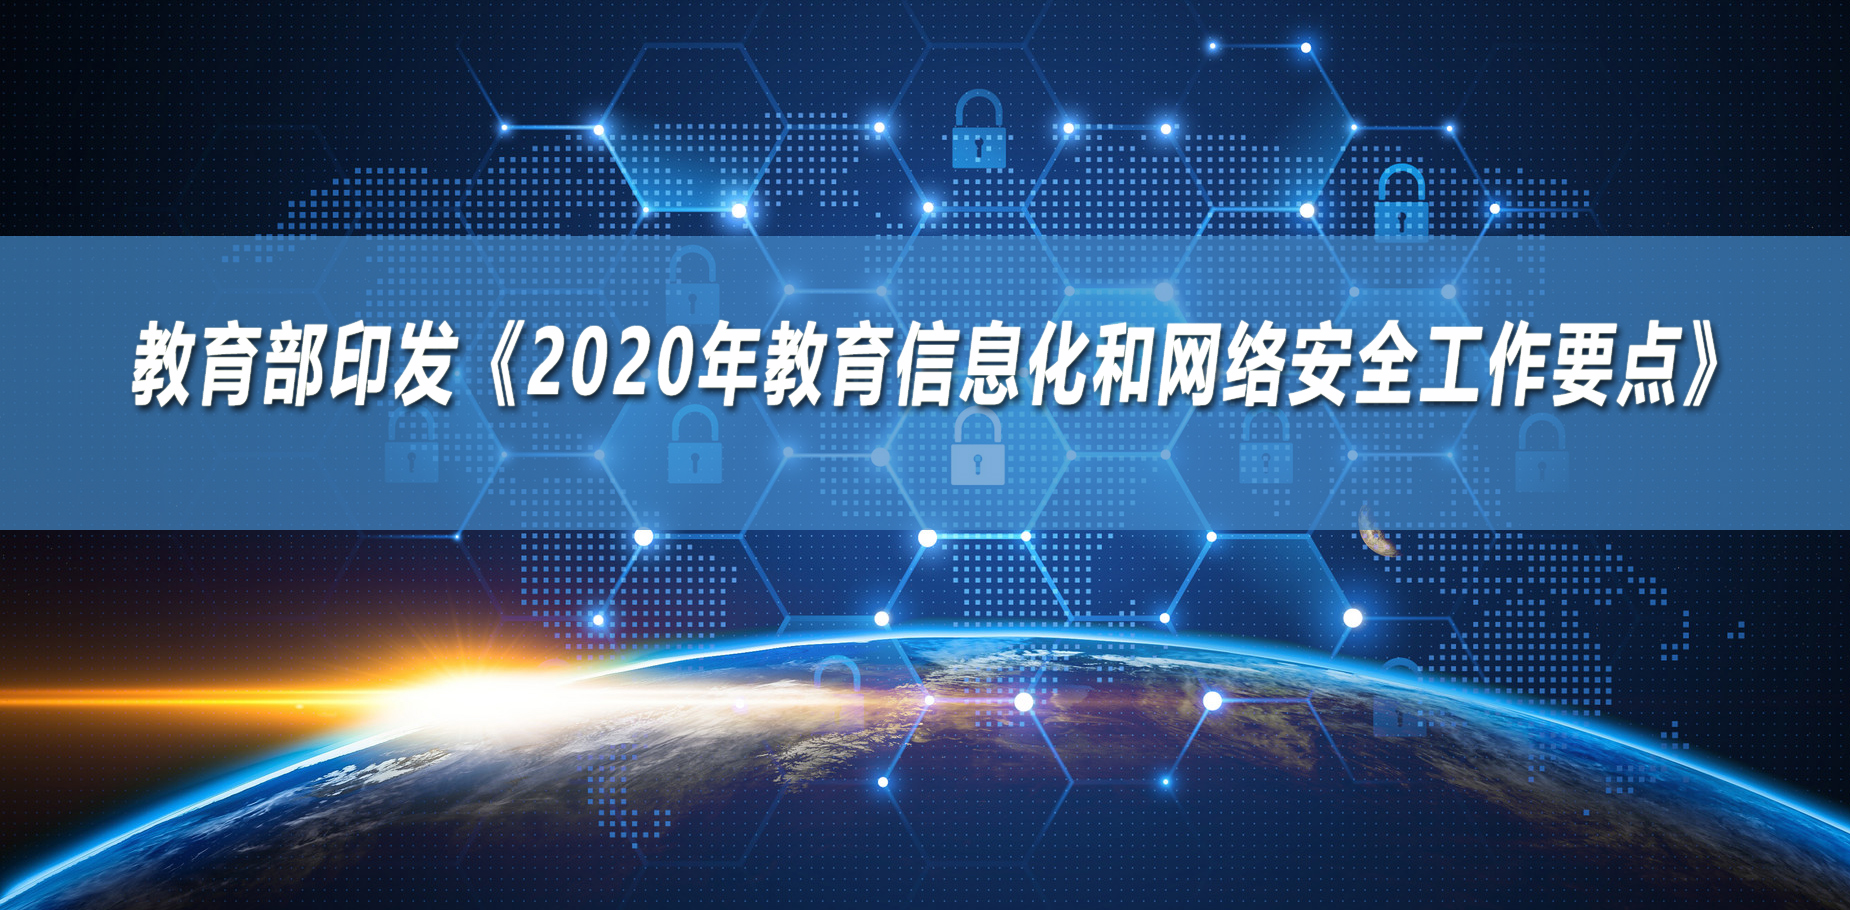 教育部发布《2020年教育信息化和网络安全工作要点》11大方面、32项重点任务